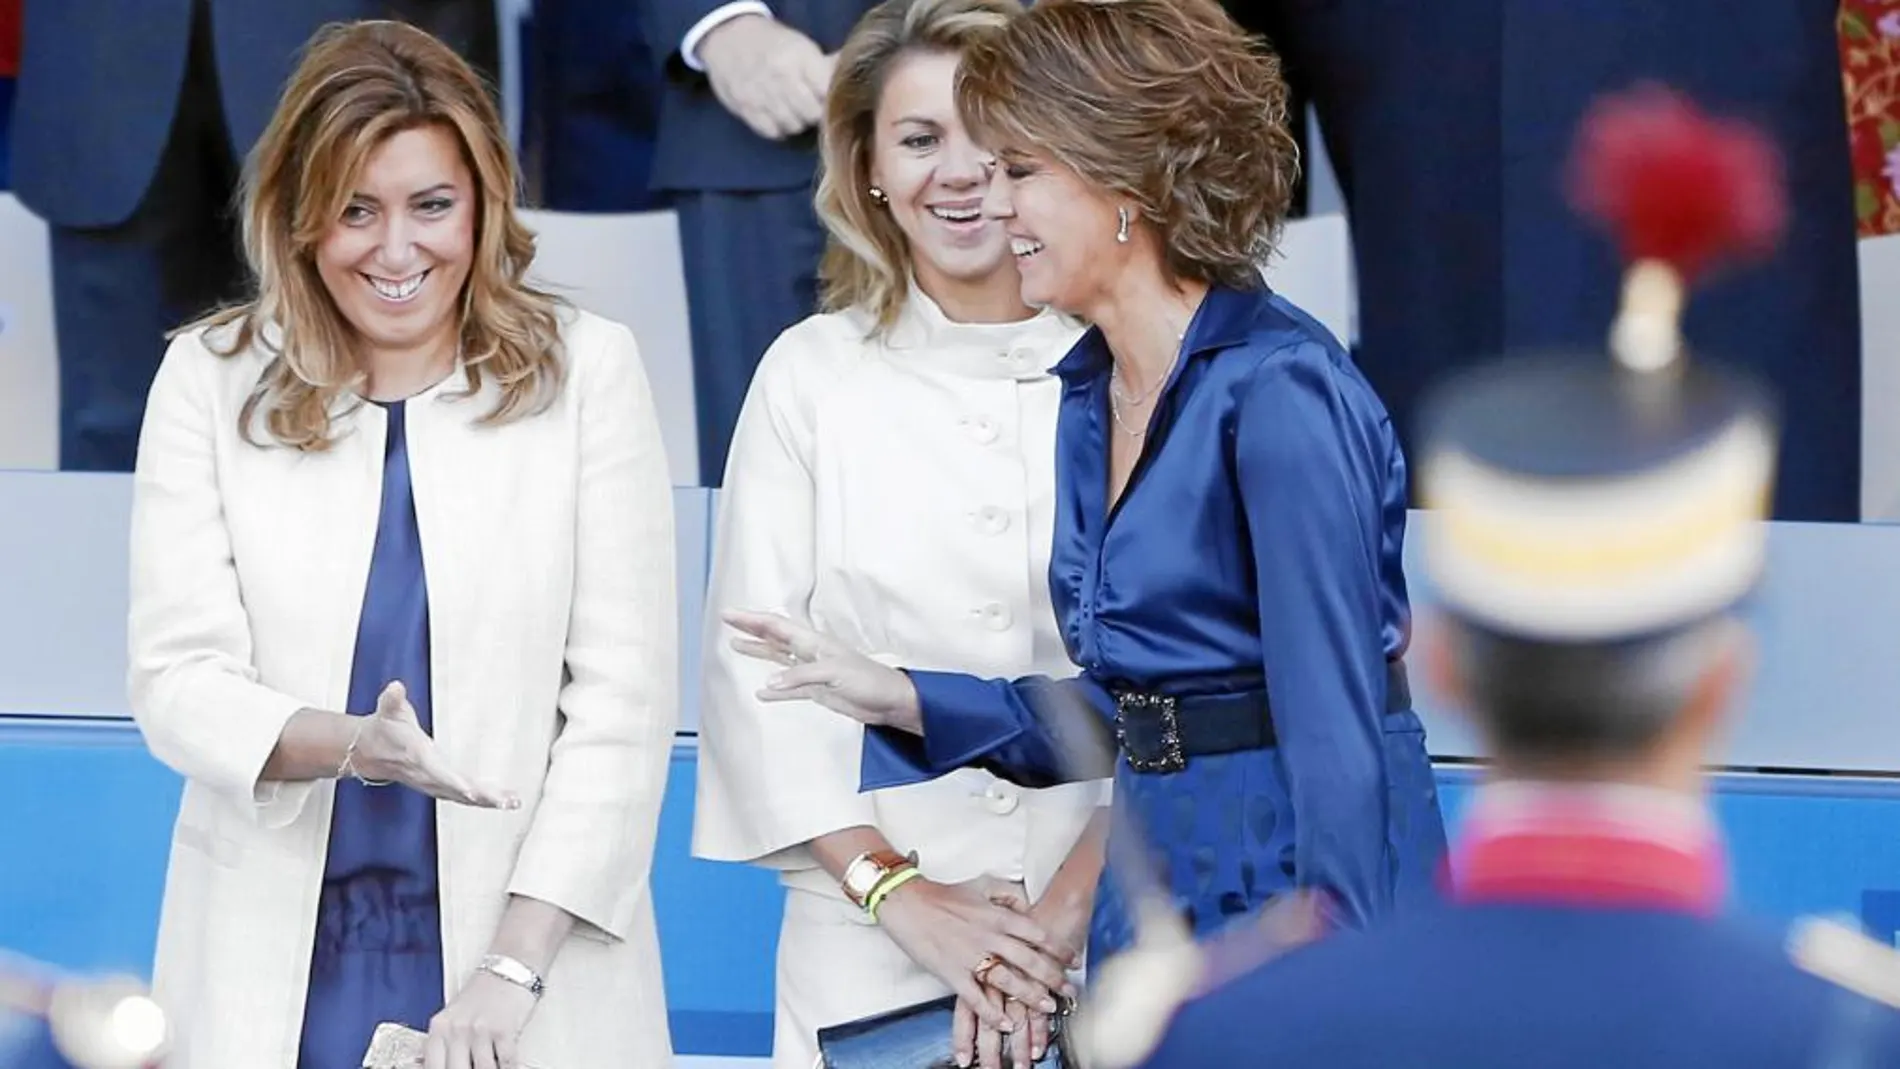 La presidenta andaluza, Susana Díaz, charló distendidamente con Cospedal y Barcina